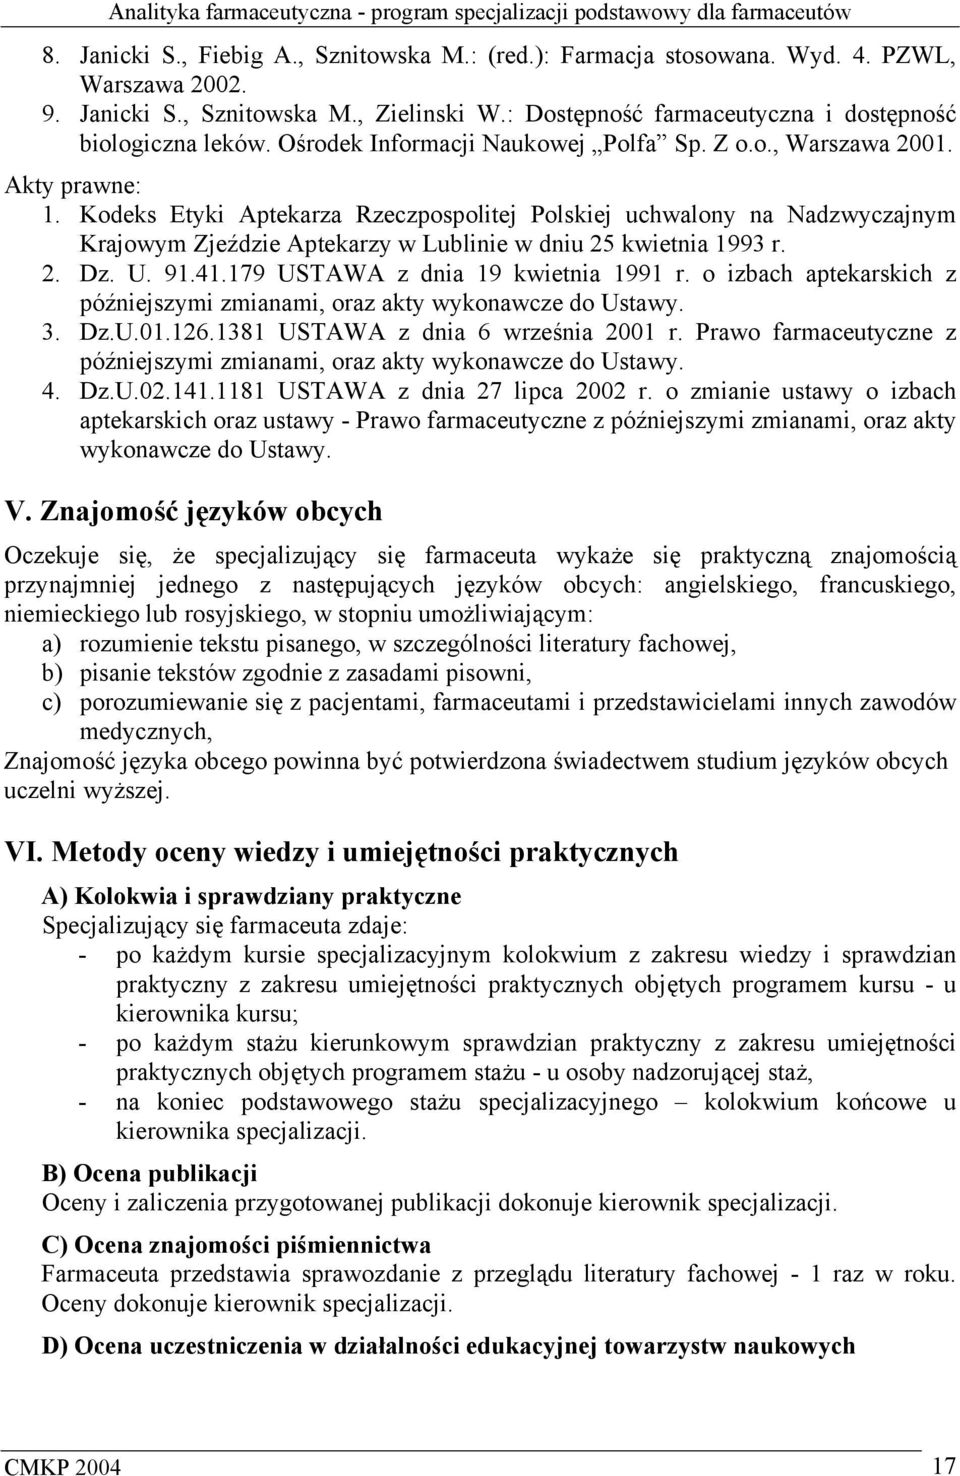 Kodeks Etyki Aptekarza Rzeczpospolitej Polskiej uchwalony na Nadzwyczajnym Krajowym Zjeździe Aptekarzy w Lublinie w dniu 25 kwietnia 1993 r. 2. Dz. U. 91.41.179 USTAWA z dnia 19 kwietnia 1991 r.